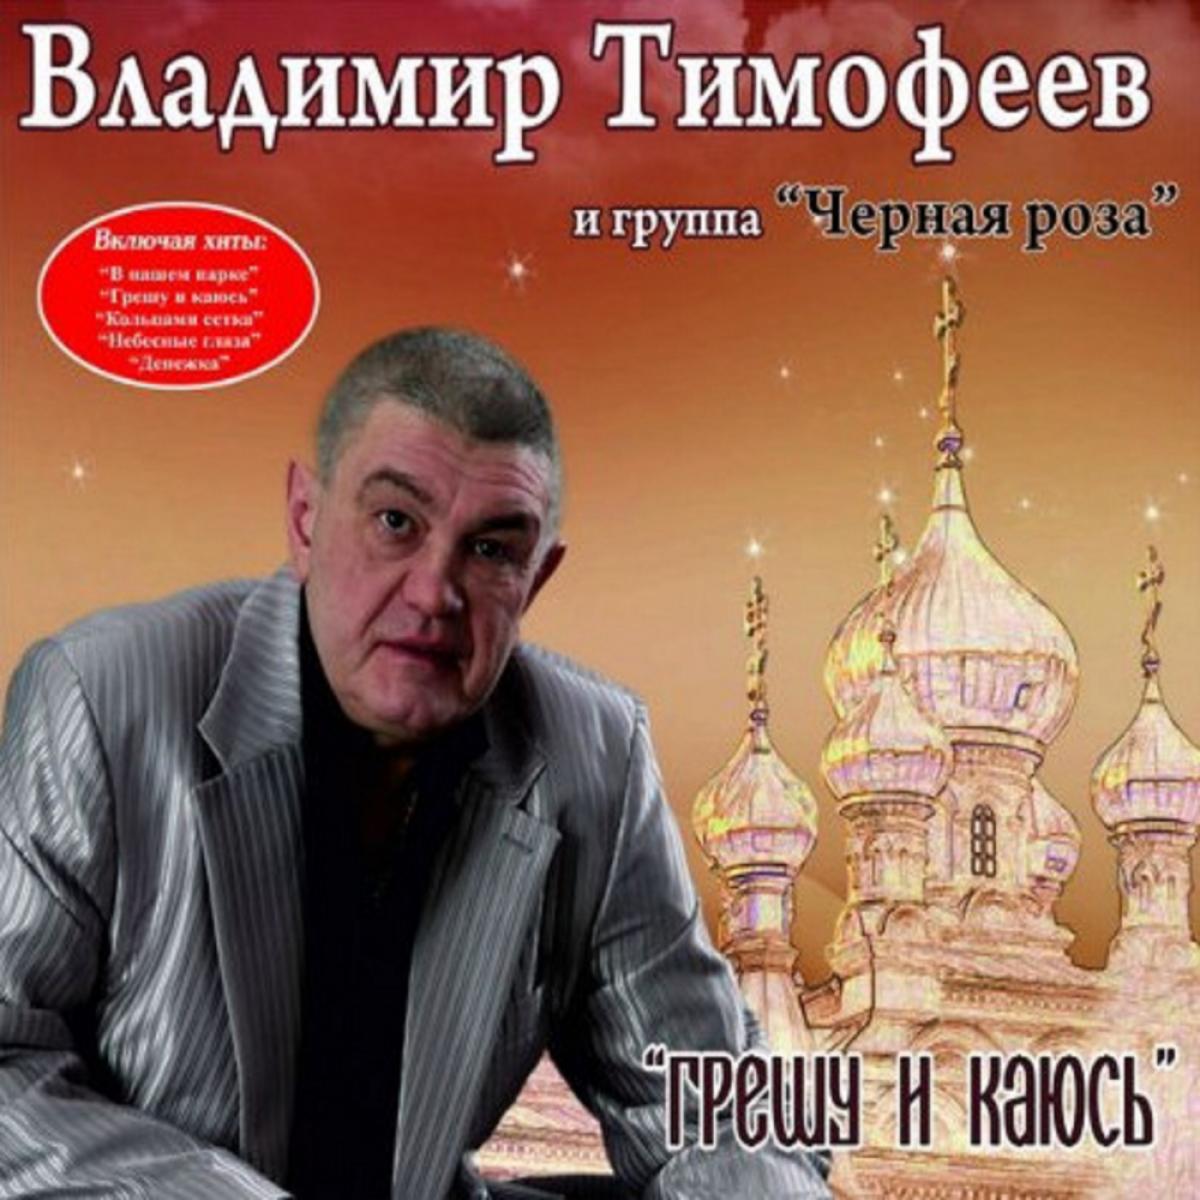 Владимир Тимофеев альбомы